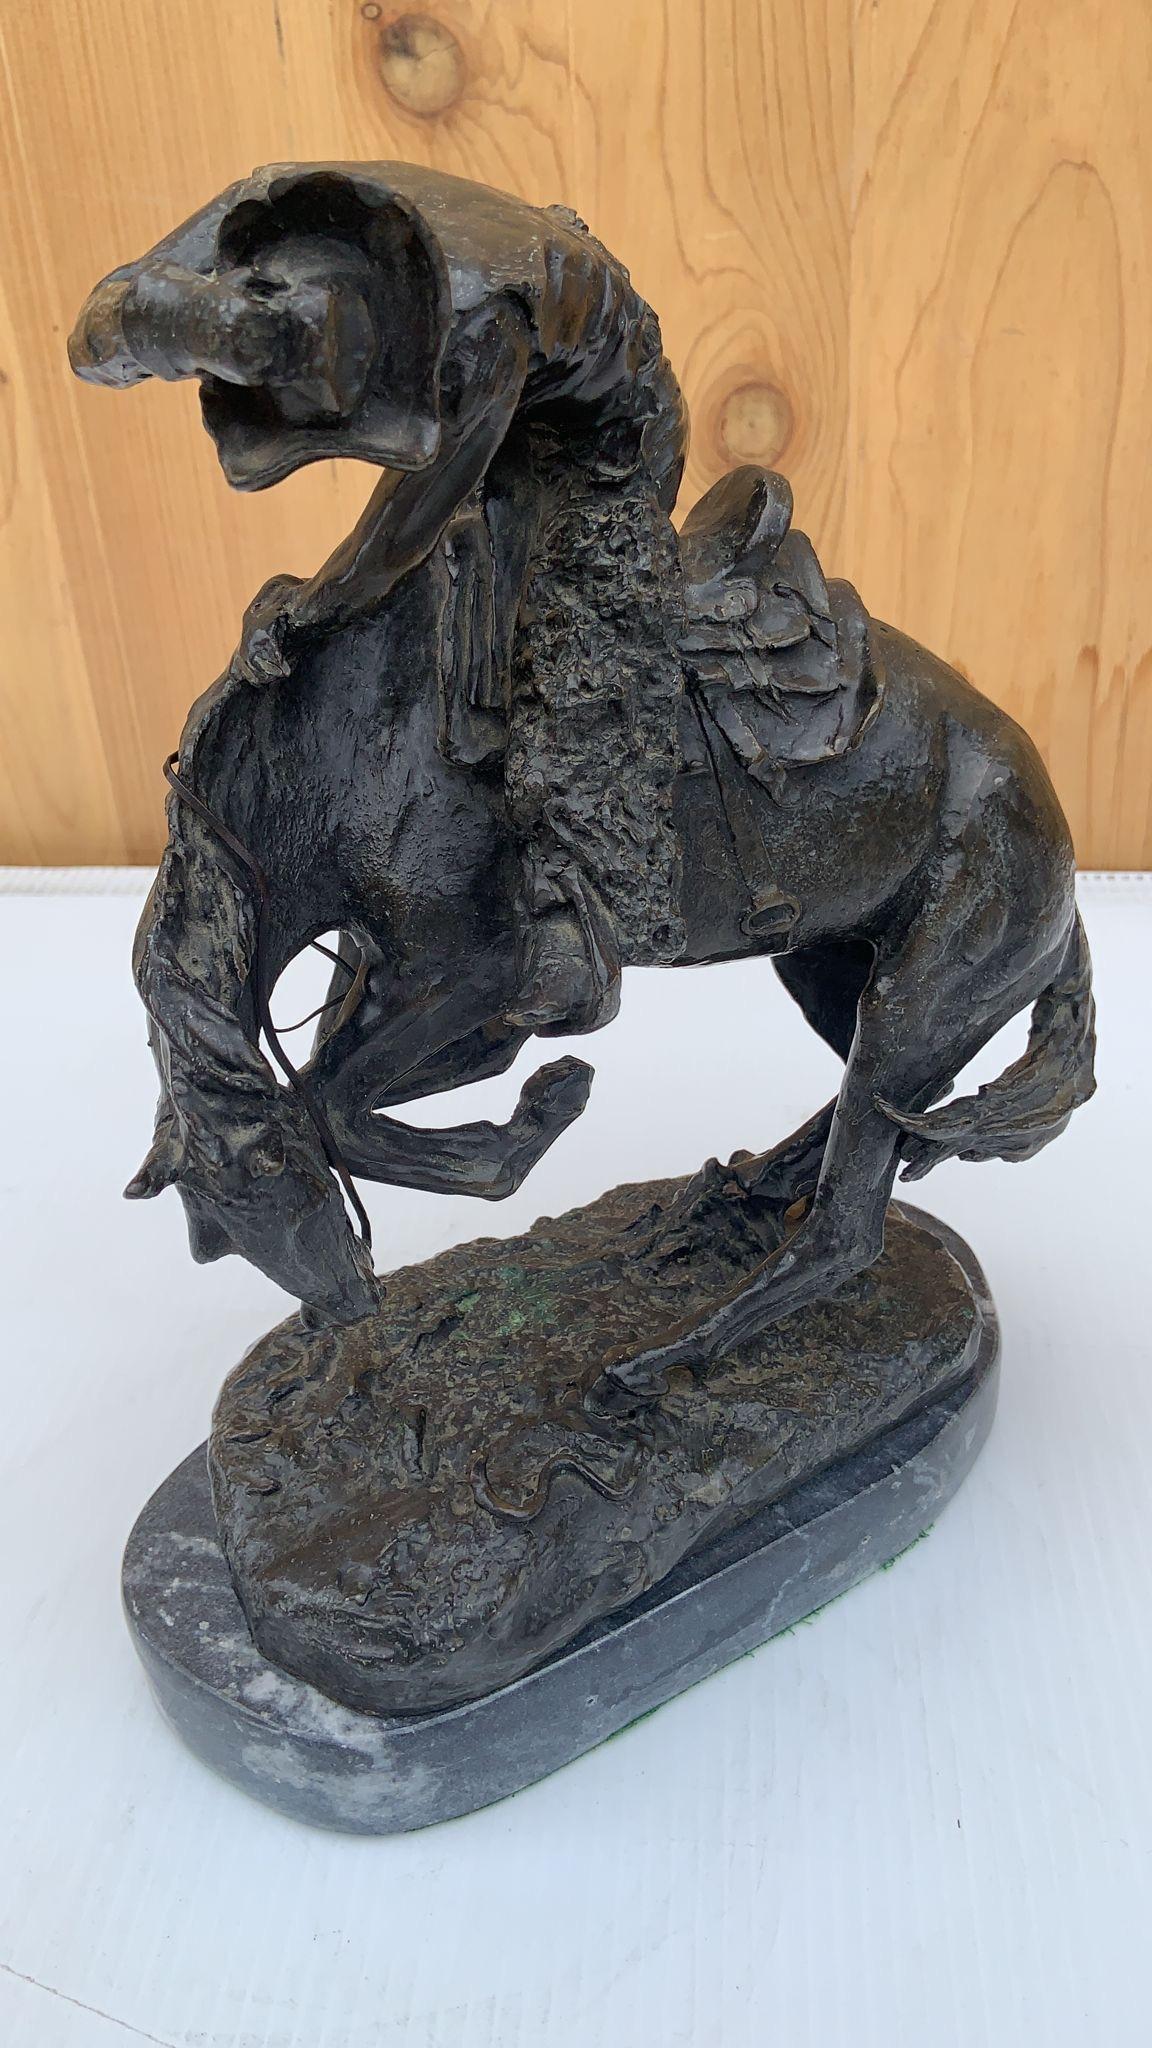 Statue de sculpture vintage en forme de serpent par Frederic Remington 

Magnifique sculpture de style cow-boy/sud-ouest. 

Procédé de fonte de bronze à la cire perdue. 

Monté sur un socle en marbre fin. 

La planche à l'avant est